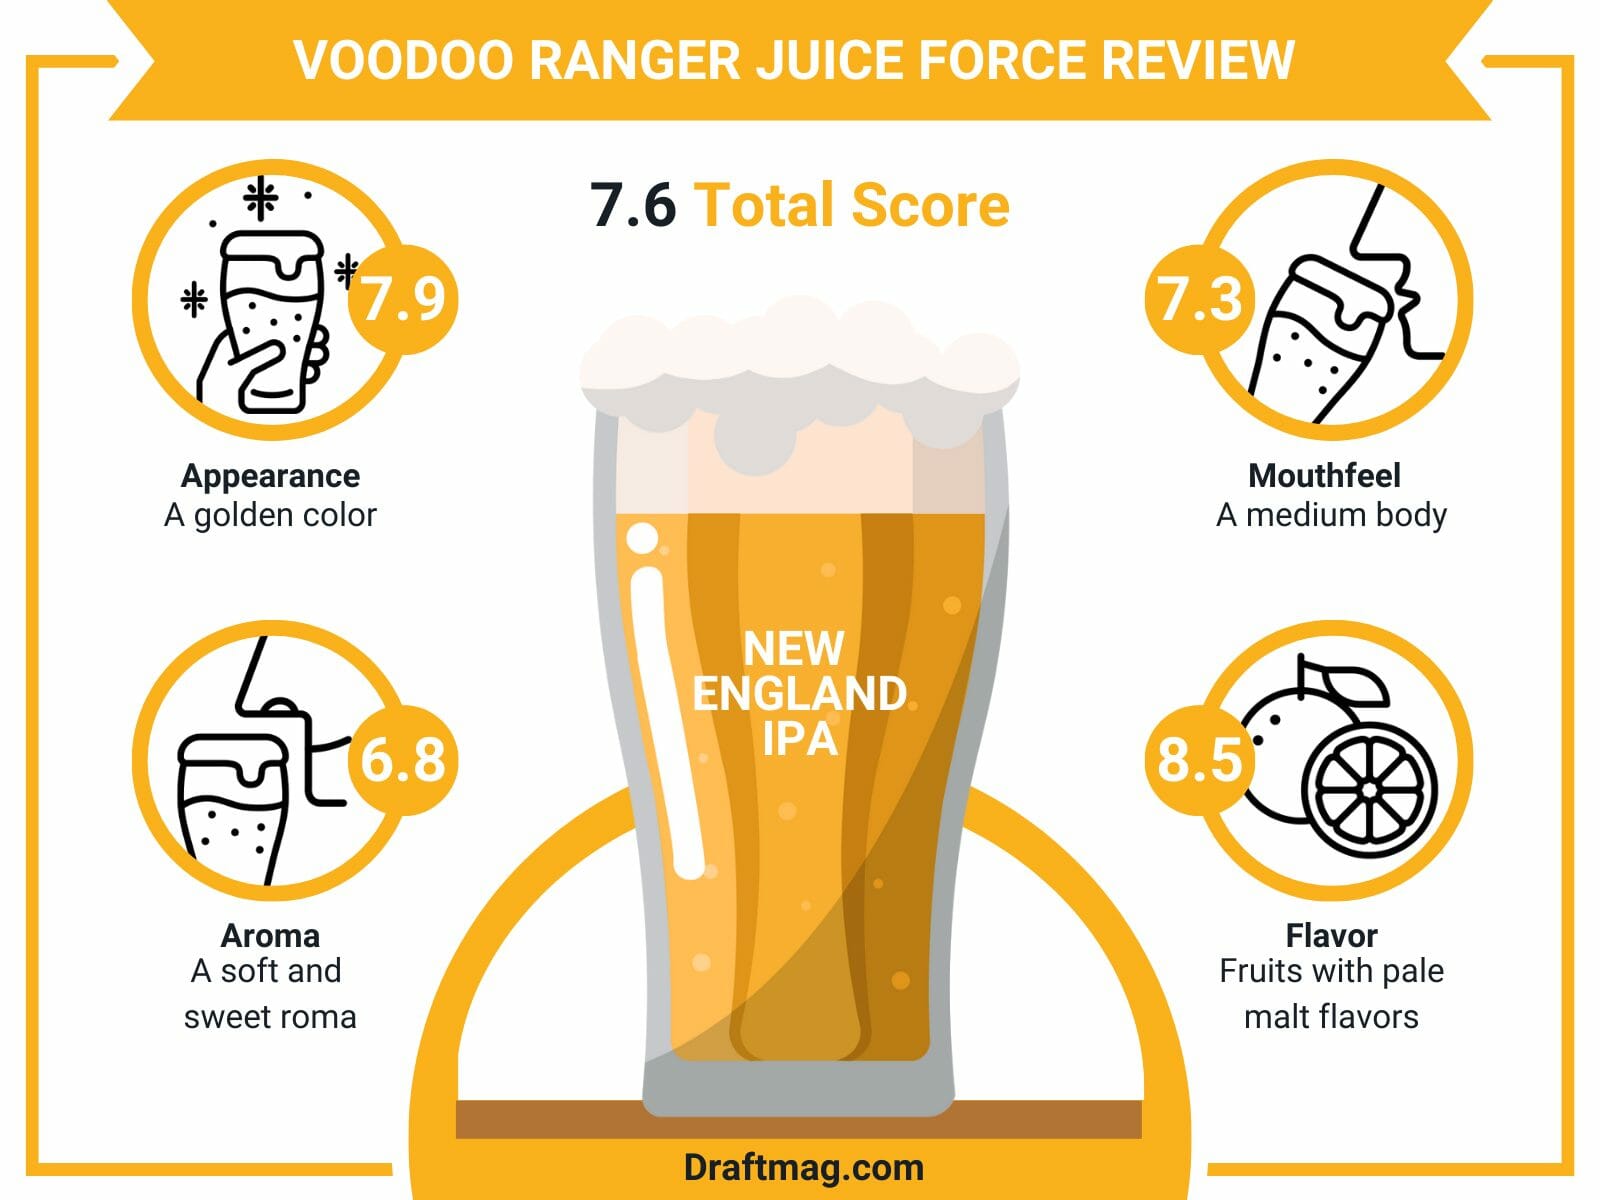 Voodoo ranger juice force review infographics